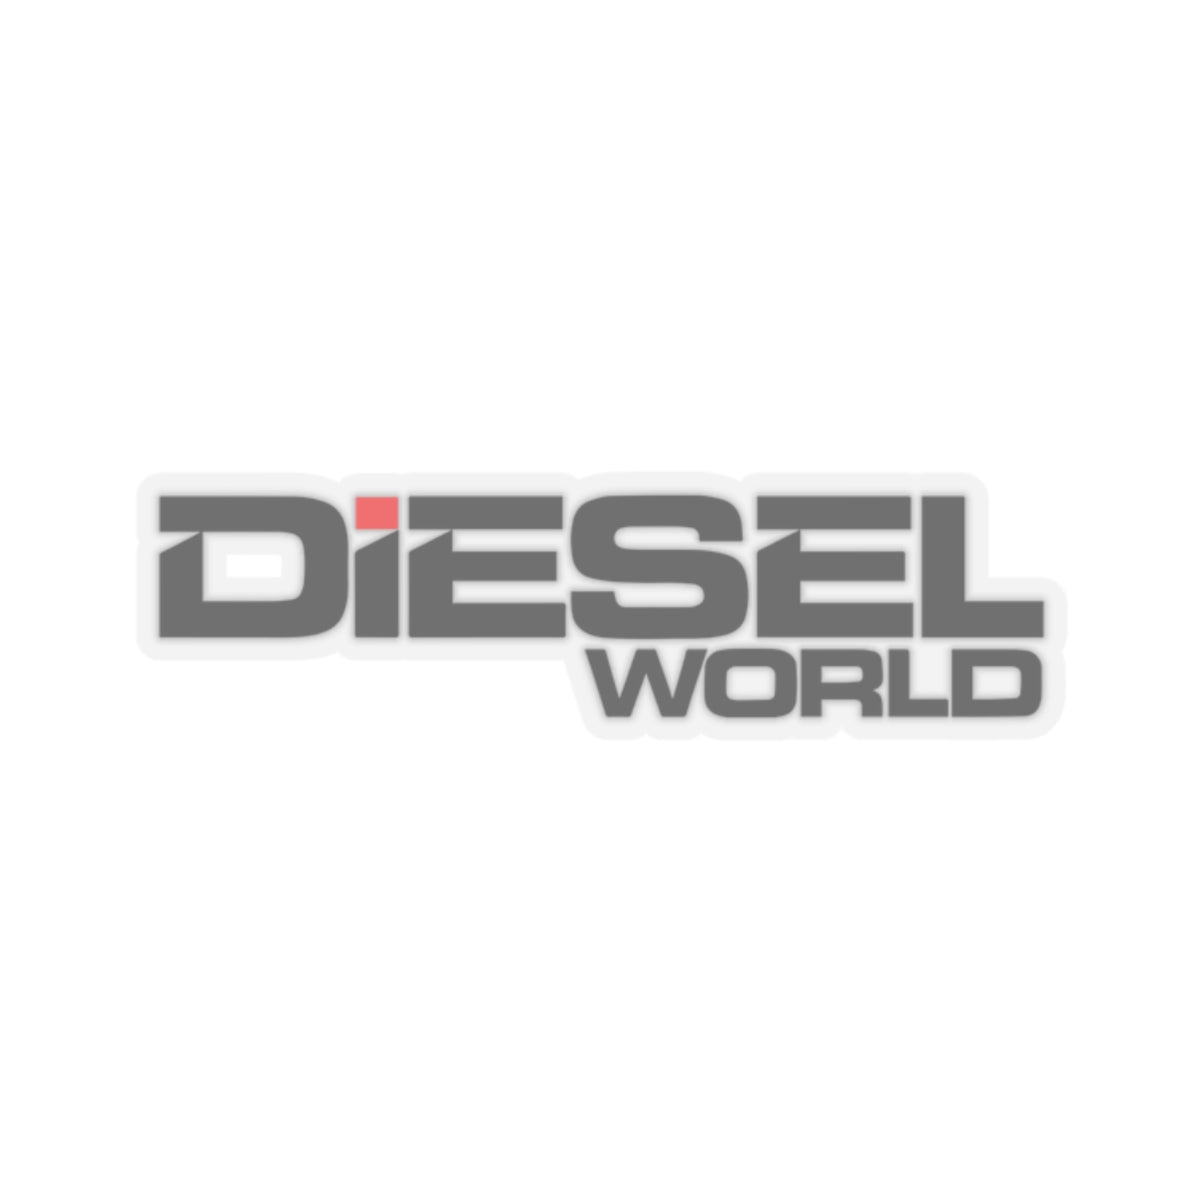 Diesel World - Kiss-Cut Stickers